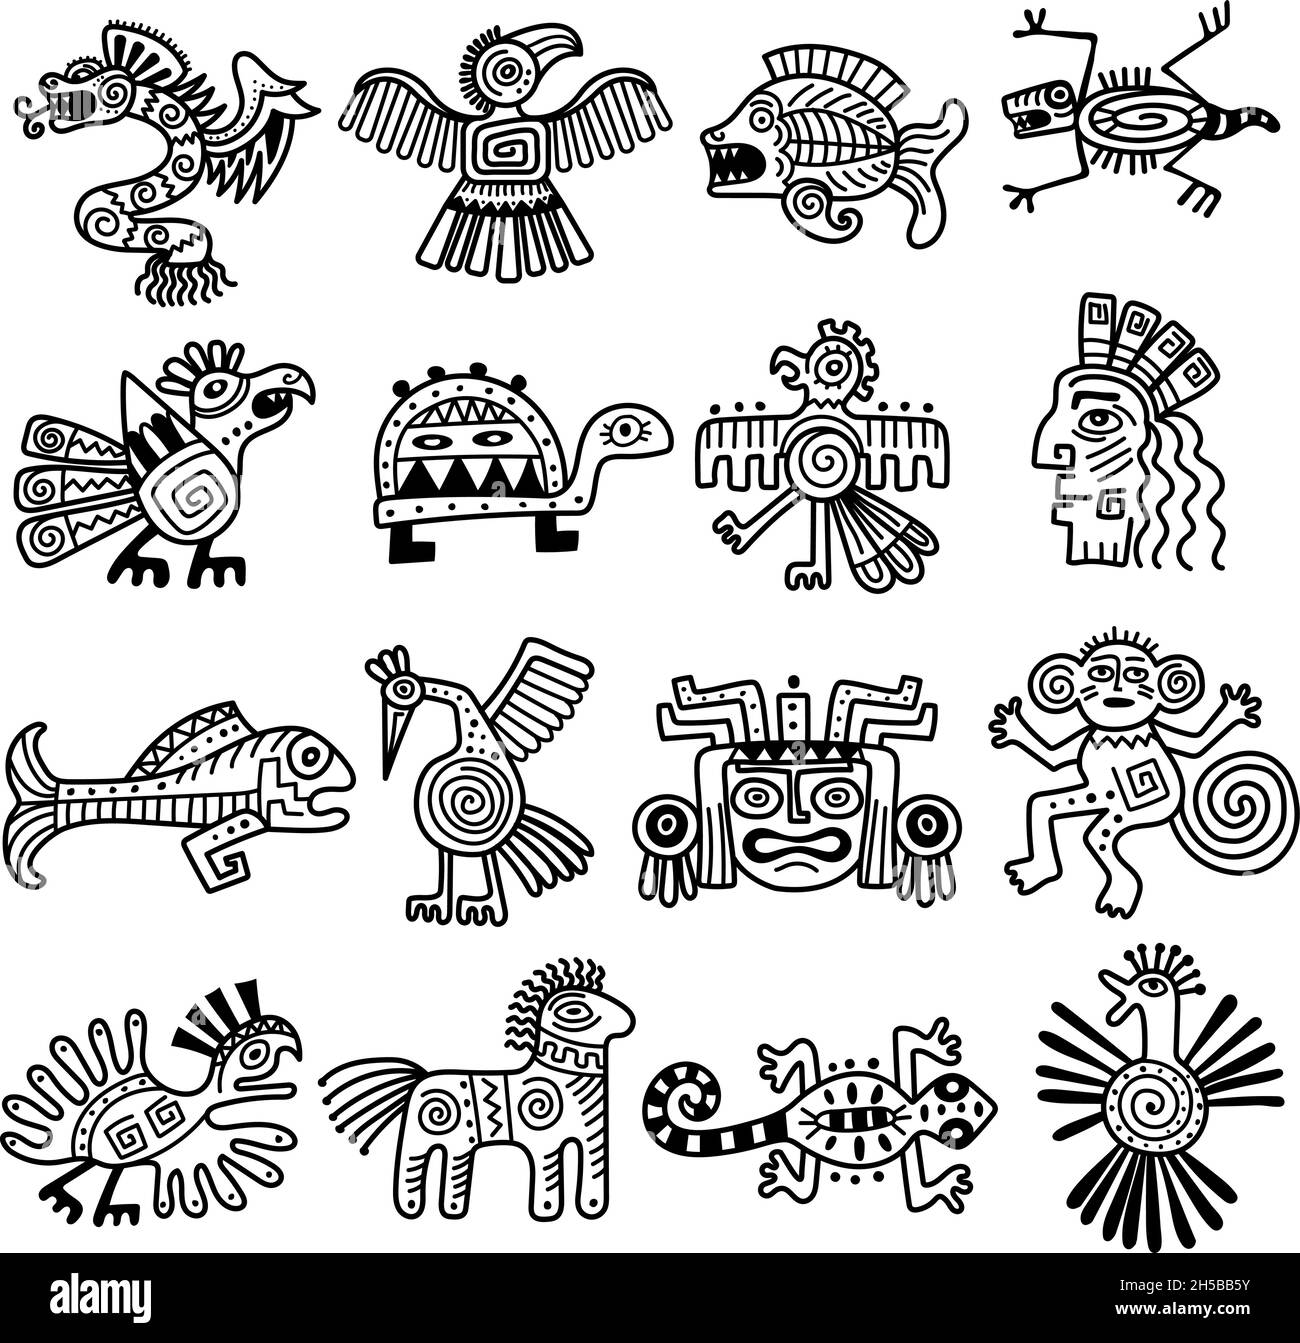 Ancien logo tribal.Icônes aztèques mexicaines animaux décoration mayan pattern Collection récente de vecteurs Illustration de Vecteur